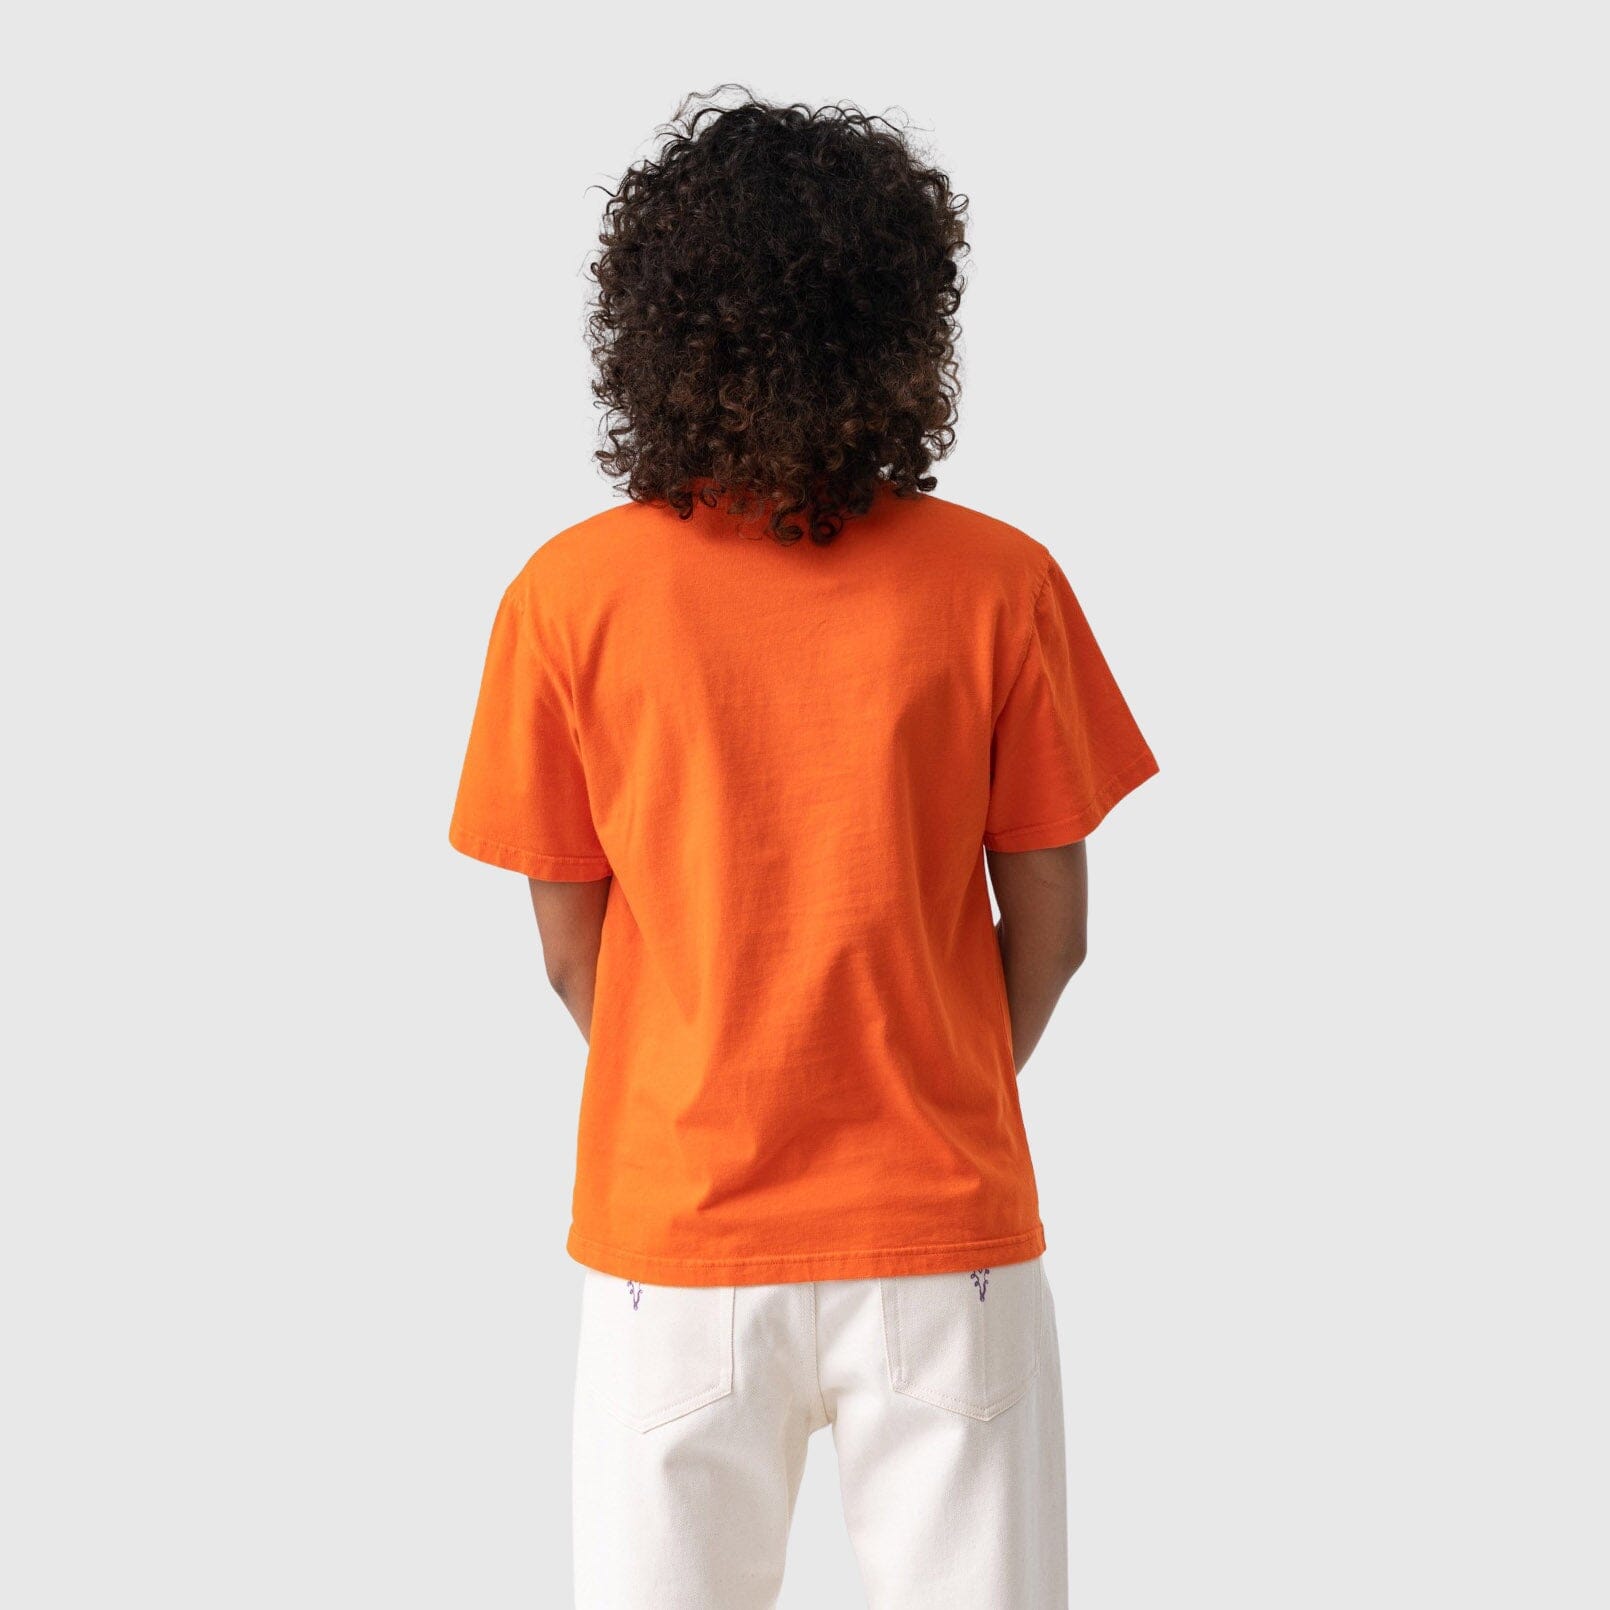 Carne Bollente Club Mad T-Shirt - Orange T-shirt Carne Bollente 